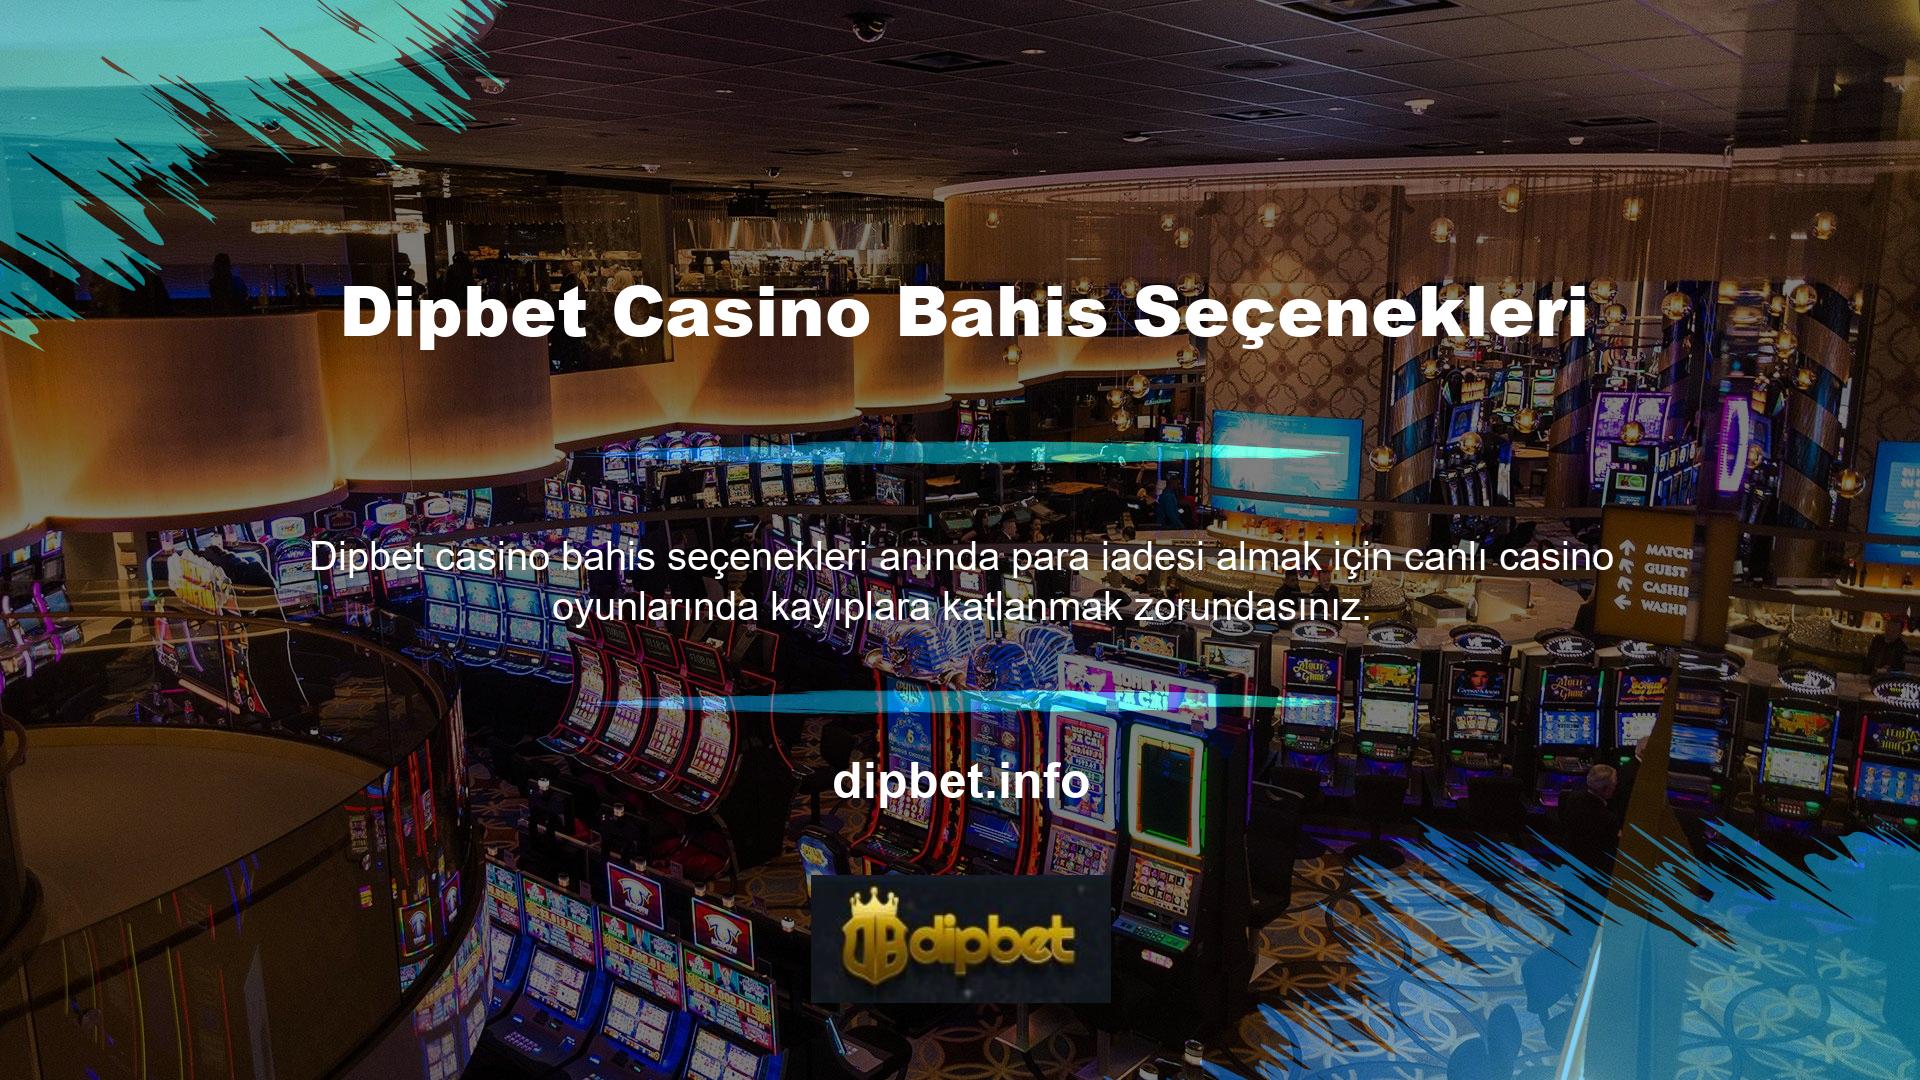 Dipbet casino bahis seçenekleri daha sonra canlı destek hattına giriş yapabilir ve bonusunuzu talep edebilirsiniz